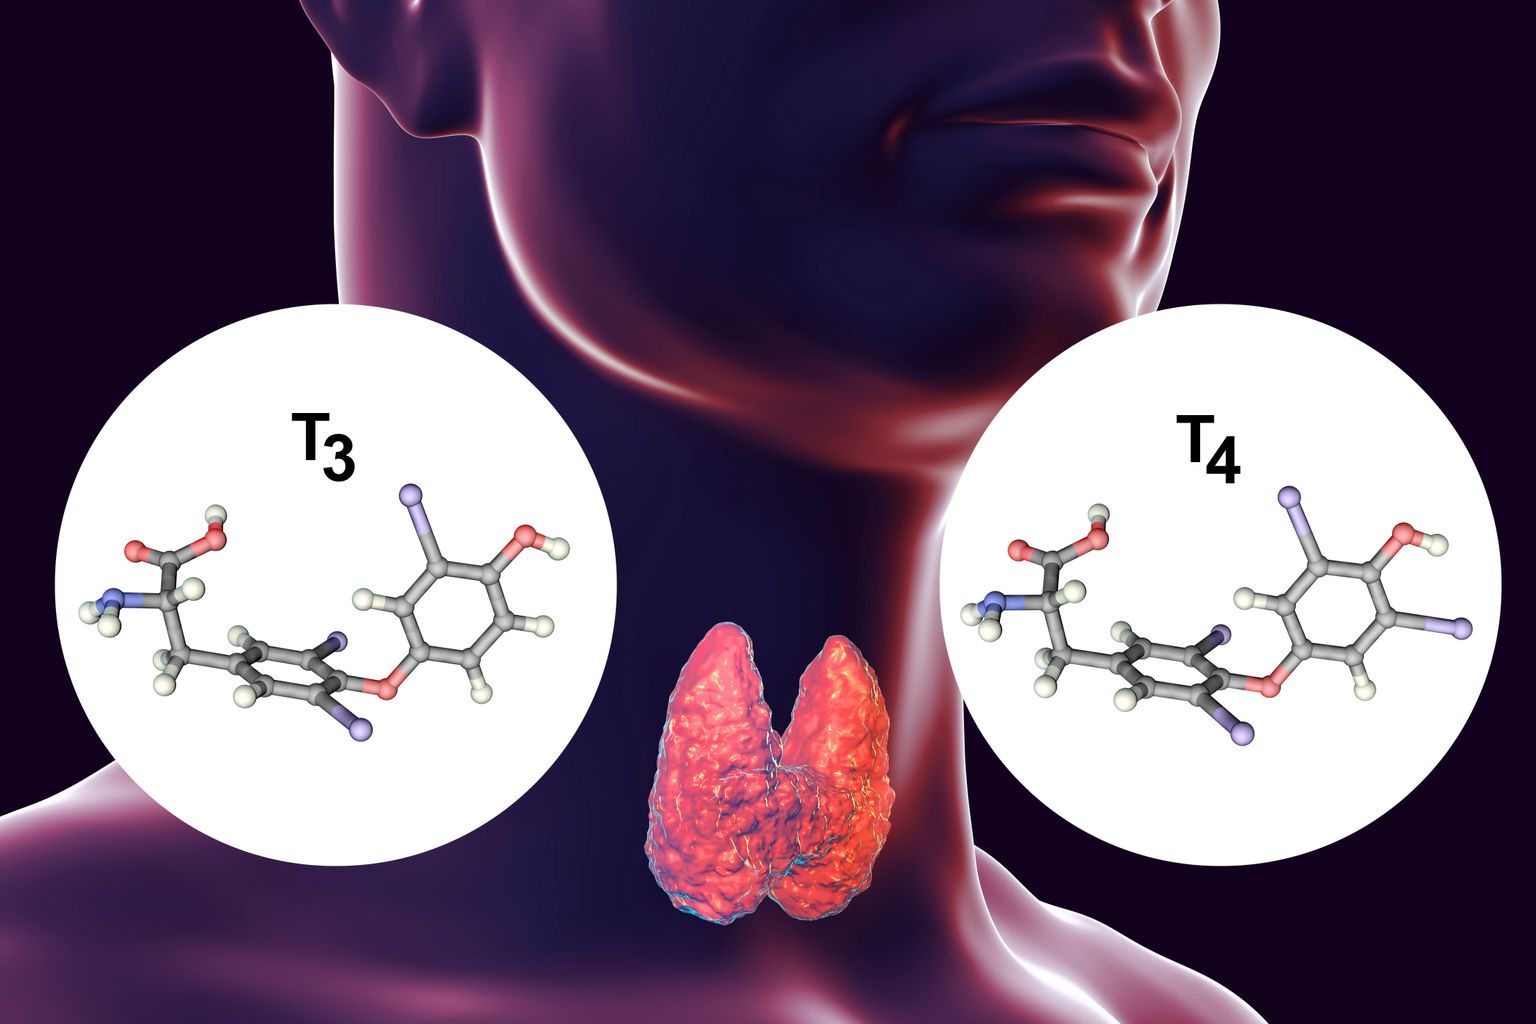 Schema van de schildklier en de hormonen T3 en T4